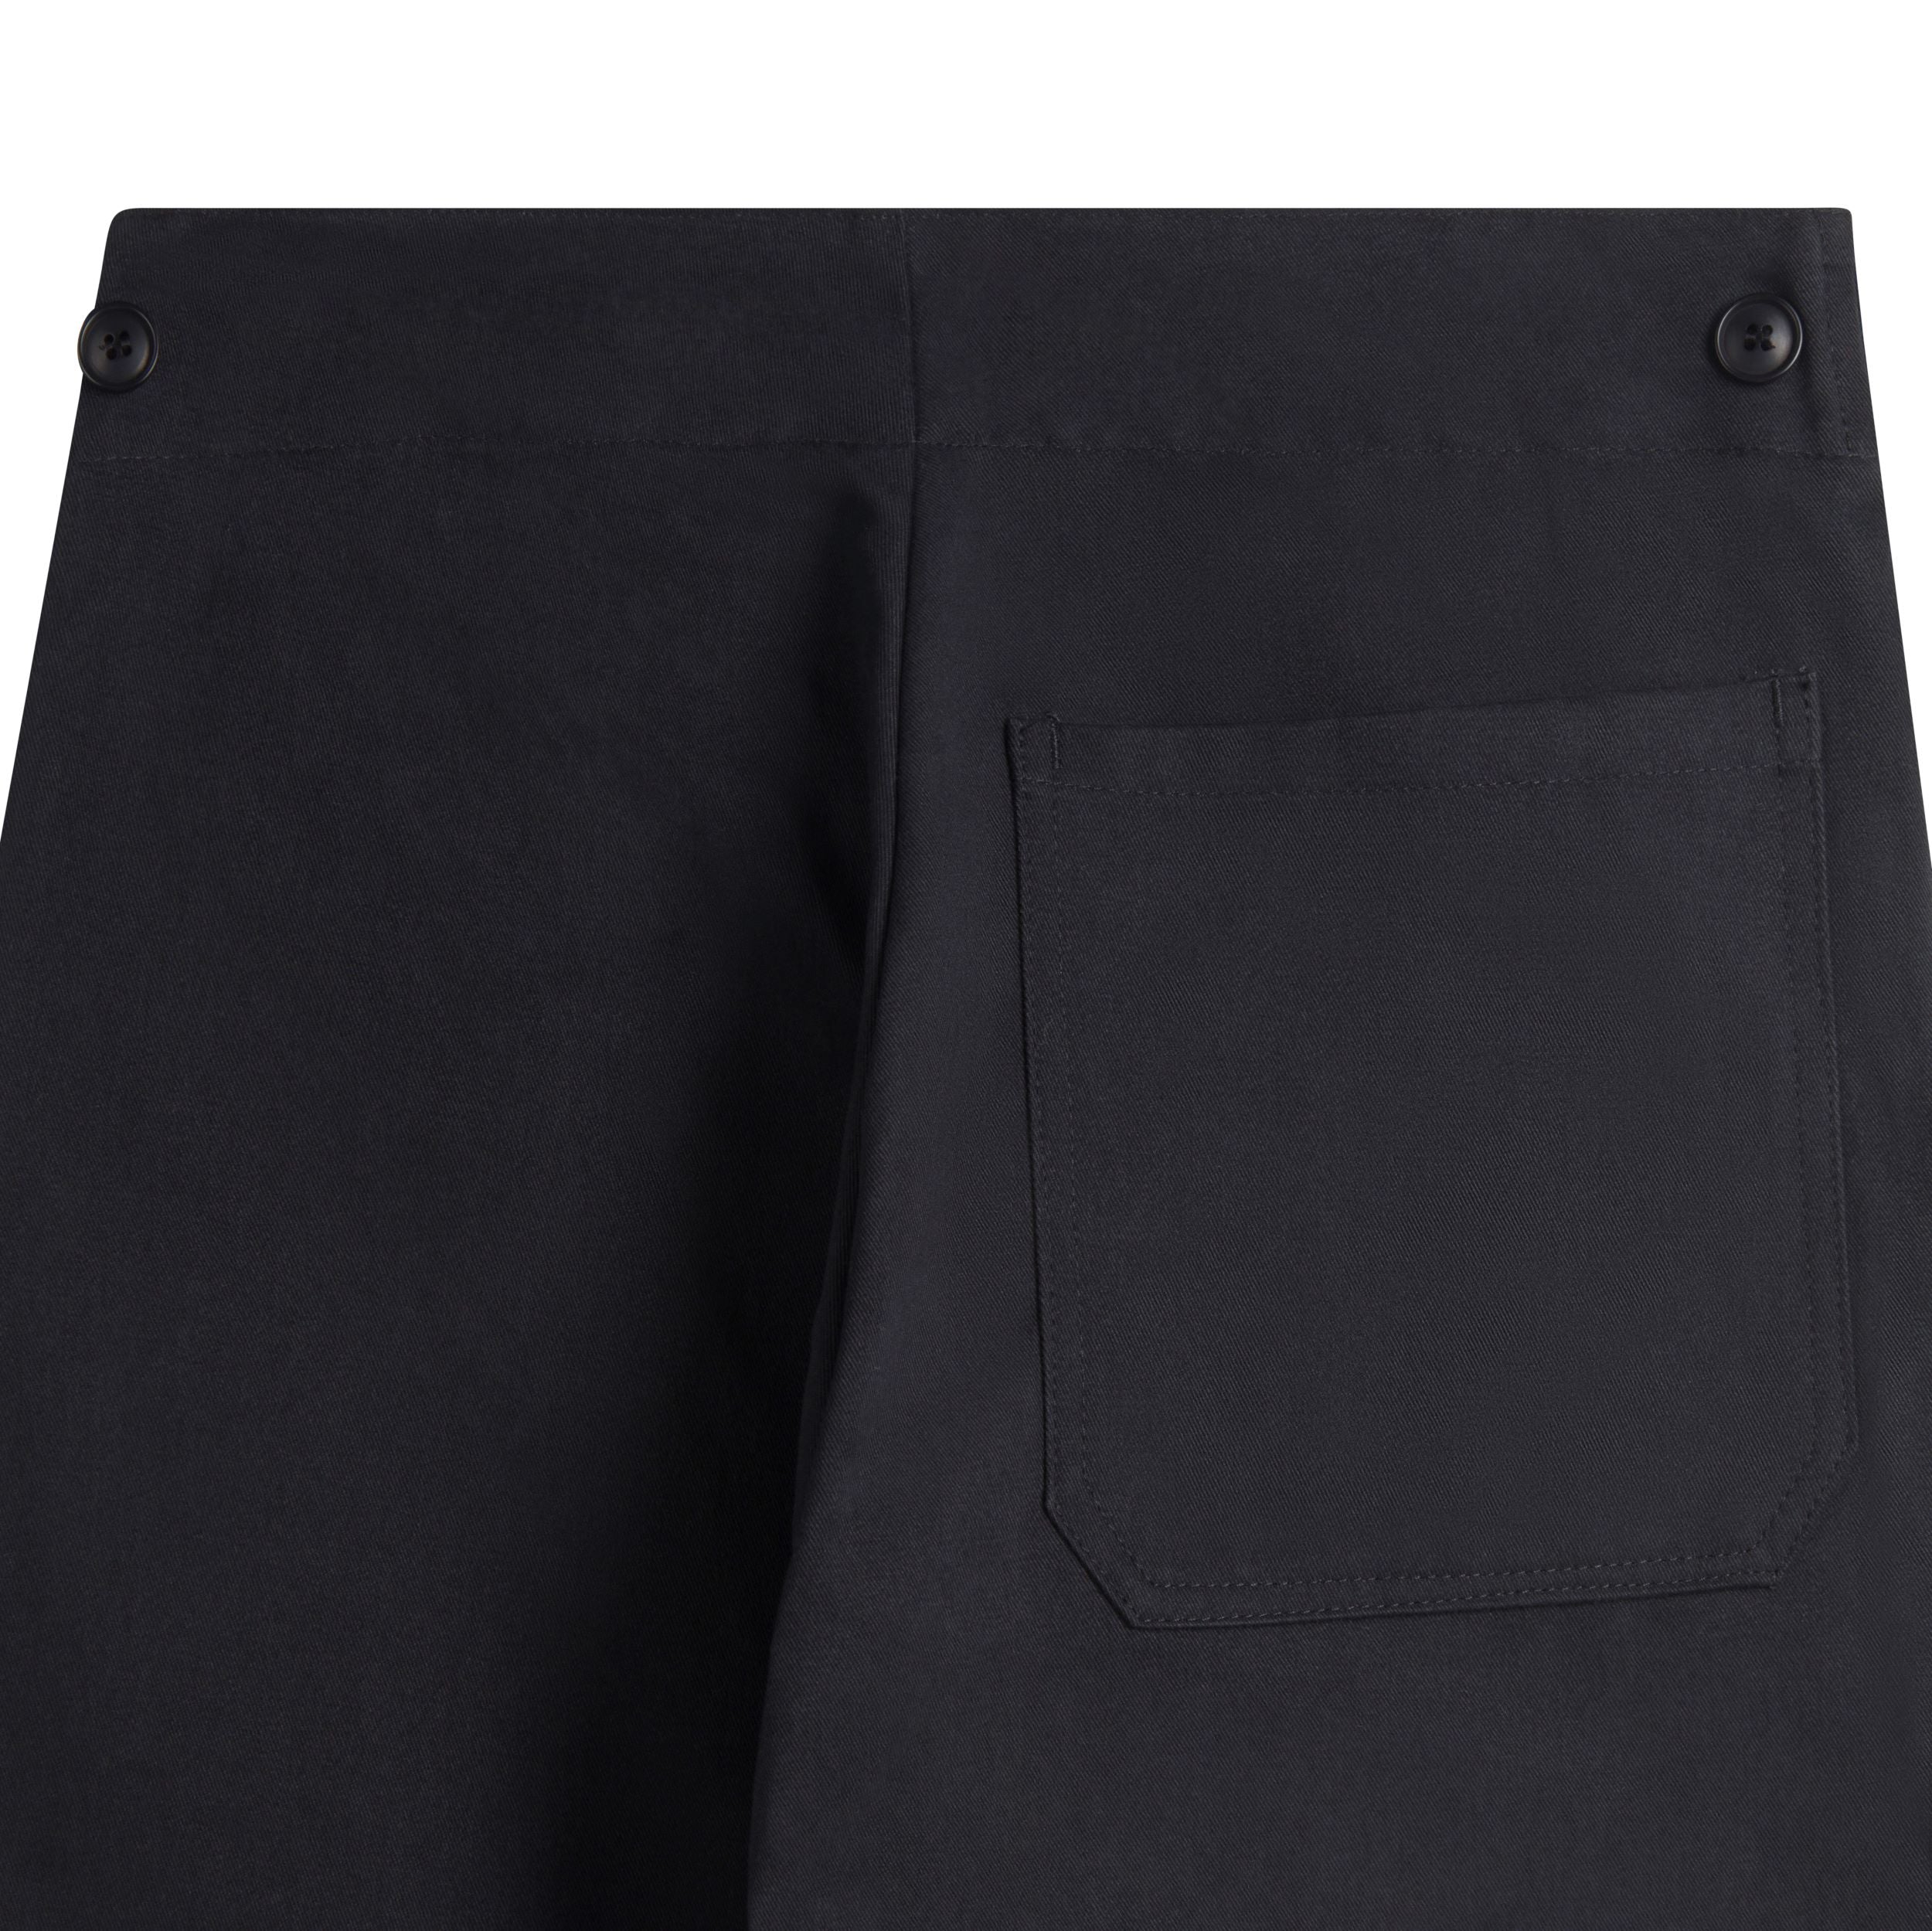 Carrier Company Women's Work trouser in Black